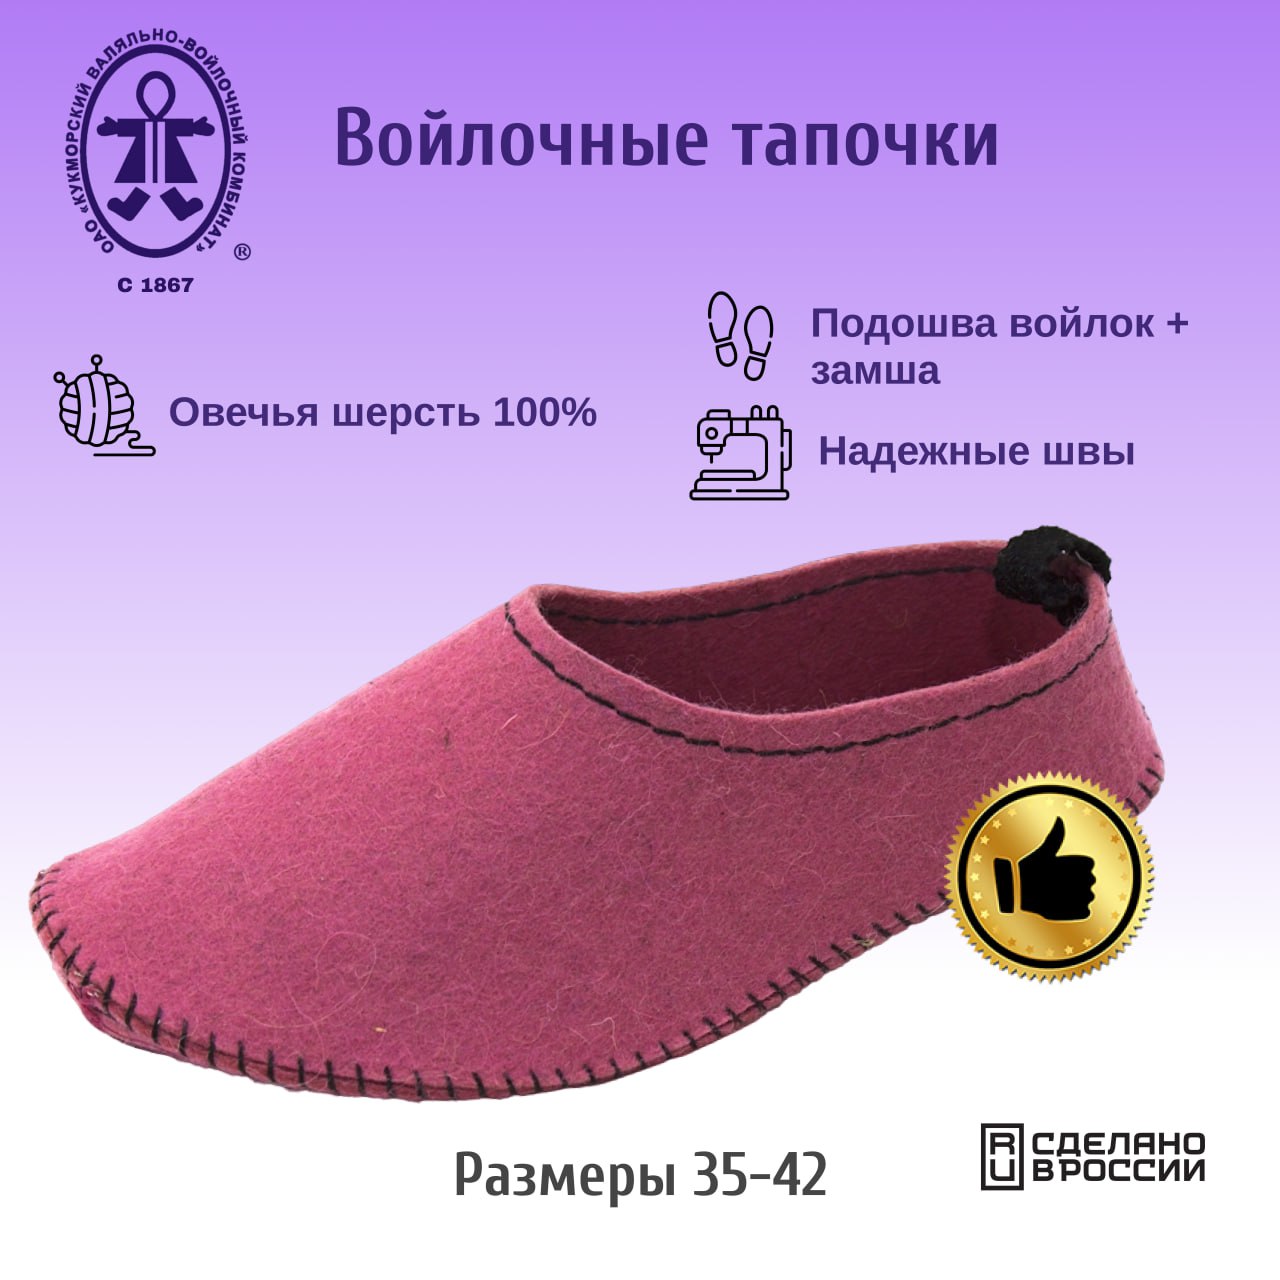 Тапочки женские Кукморские валенки Т-34-2033 розовые 38 RU